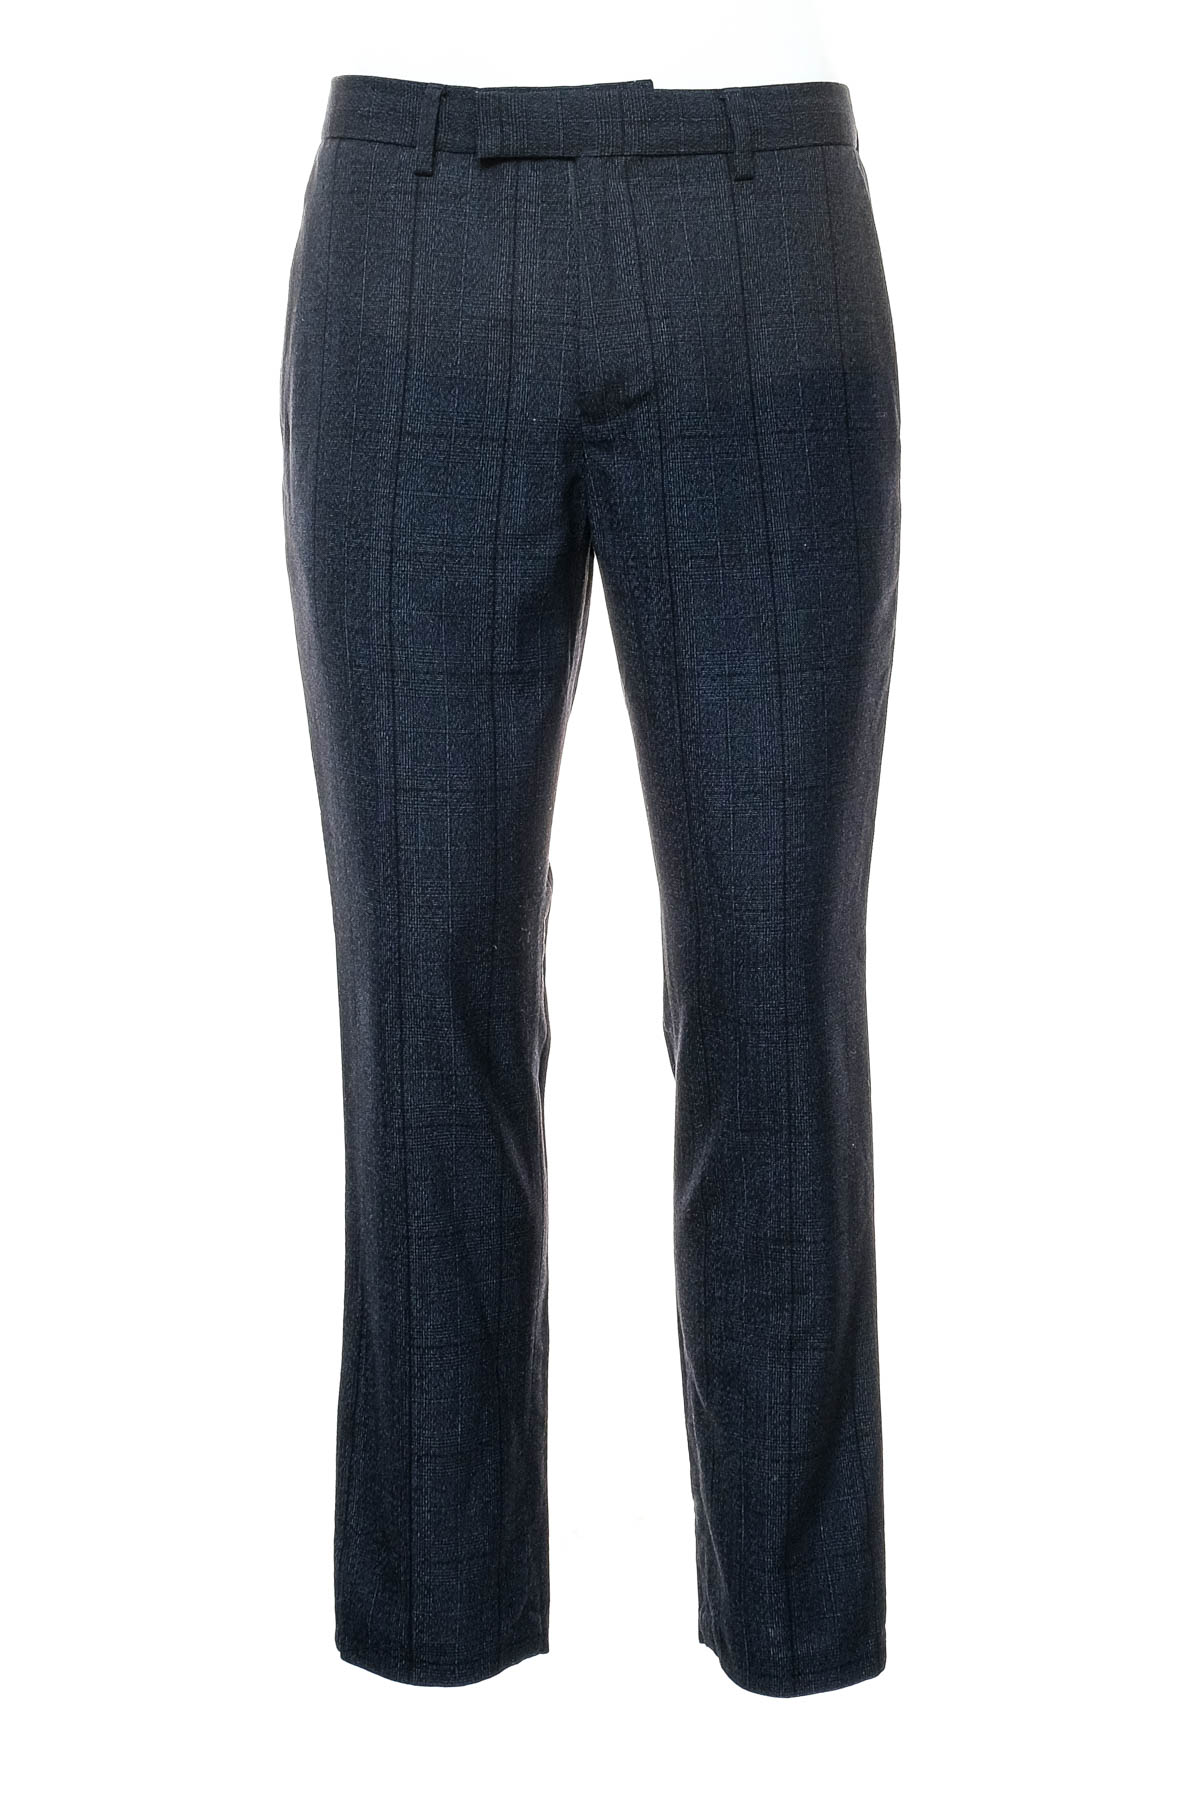 Pantalon pentru bărbați - PRIMARK - 0